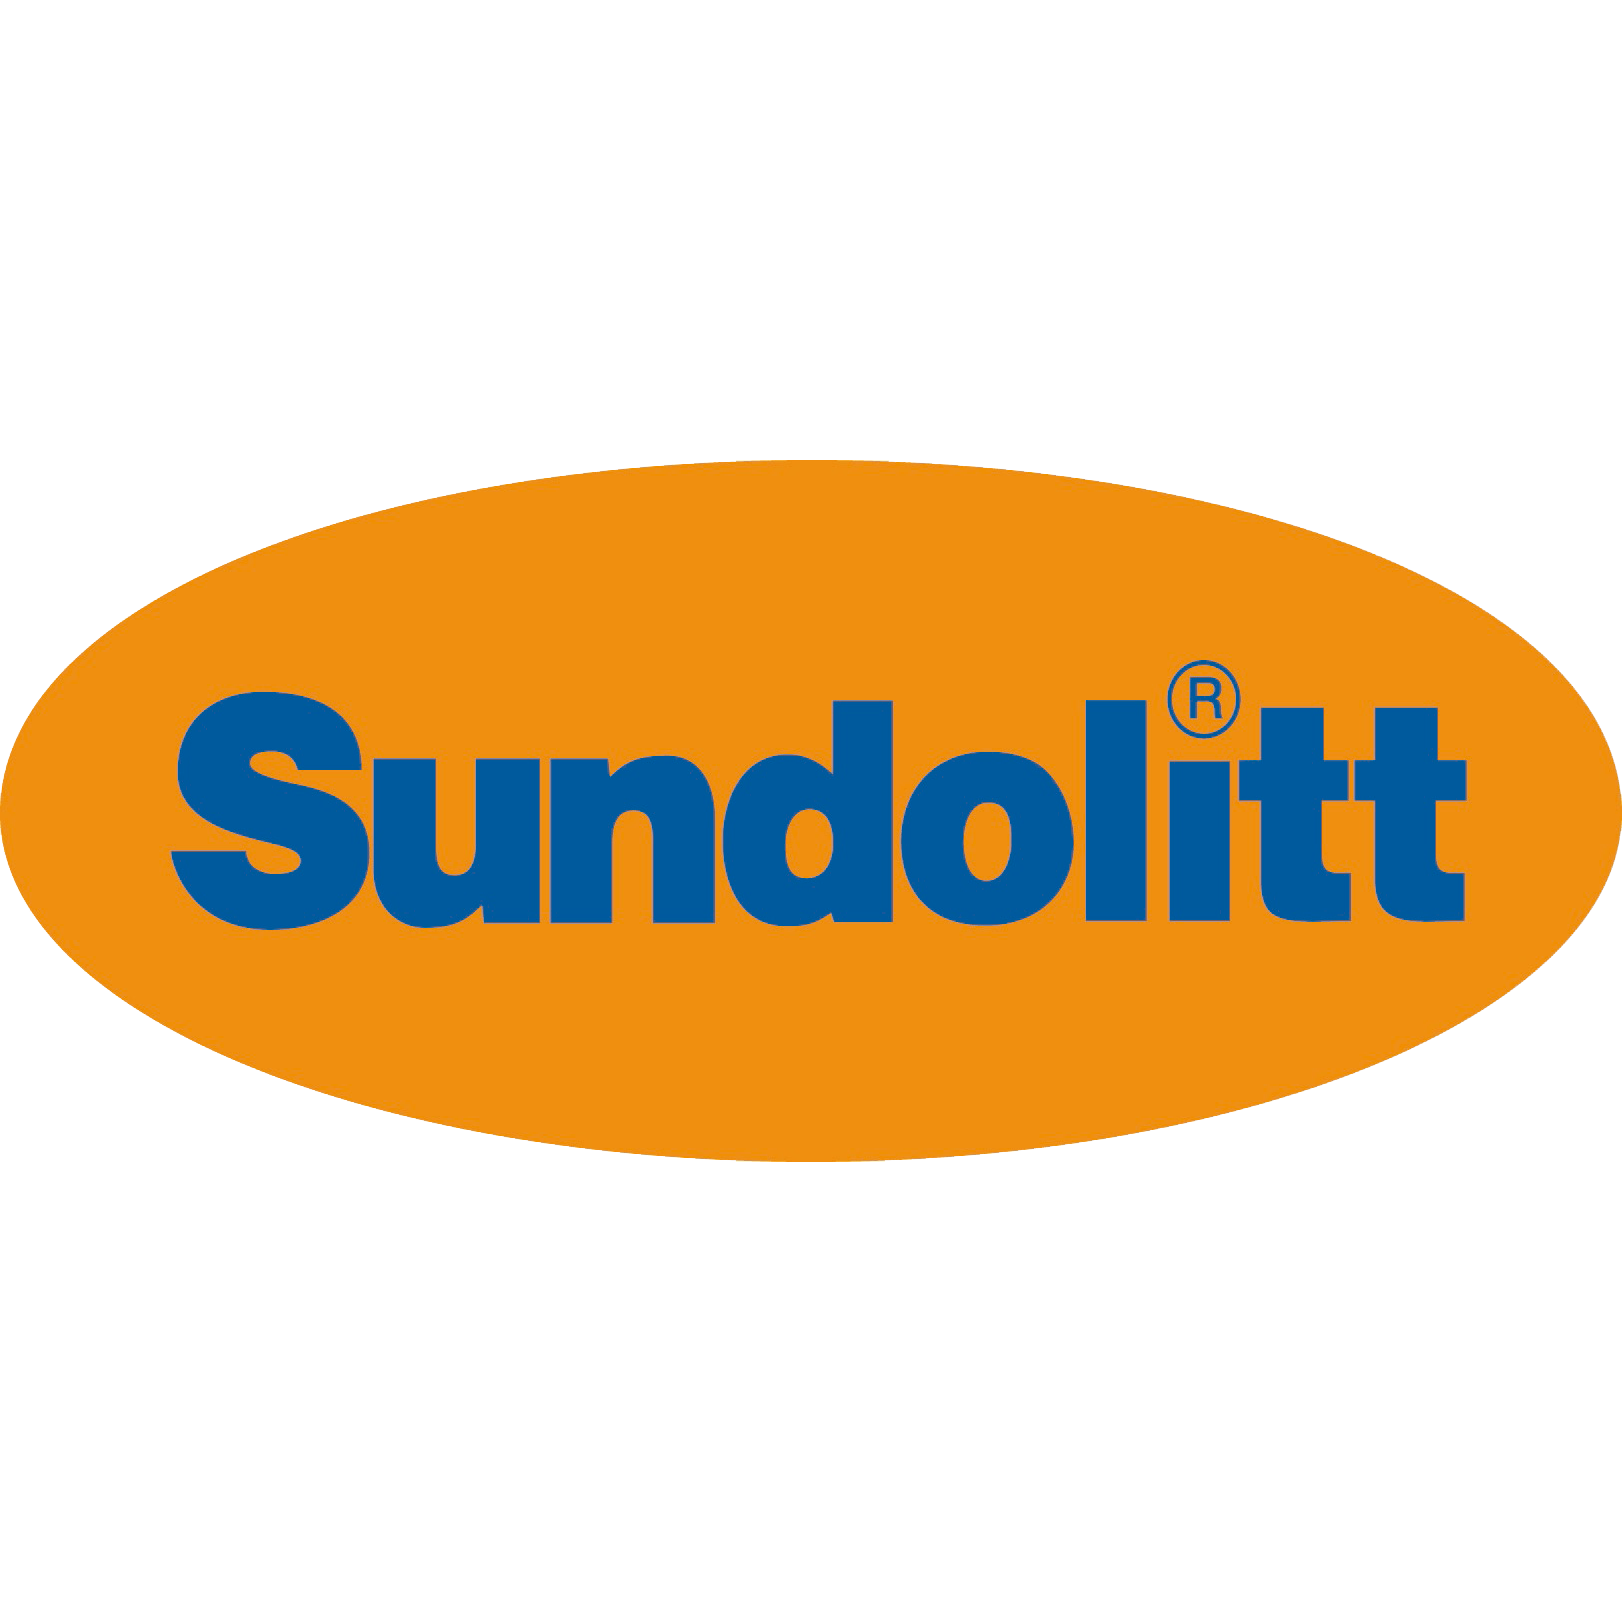 Sundolitt GmbH